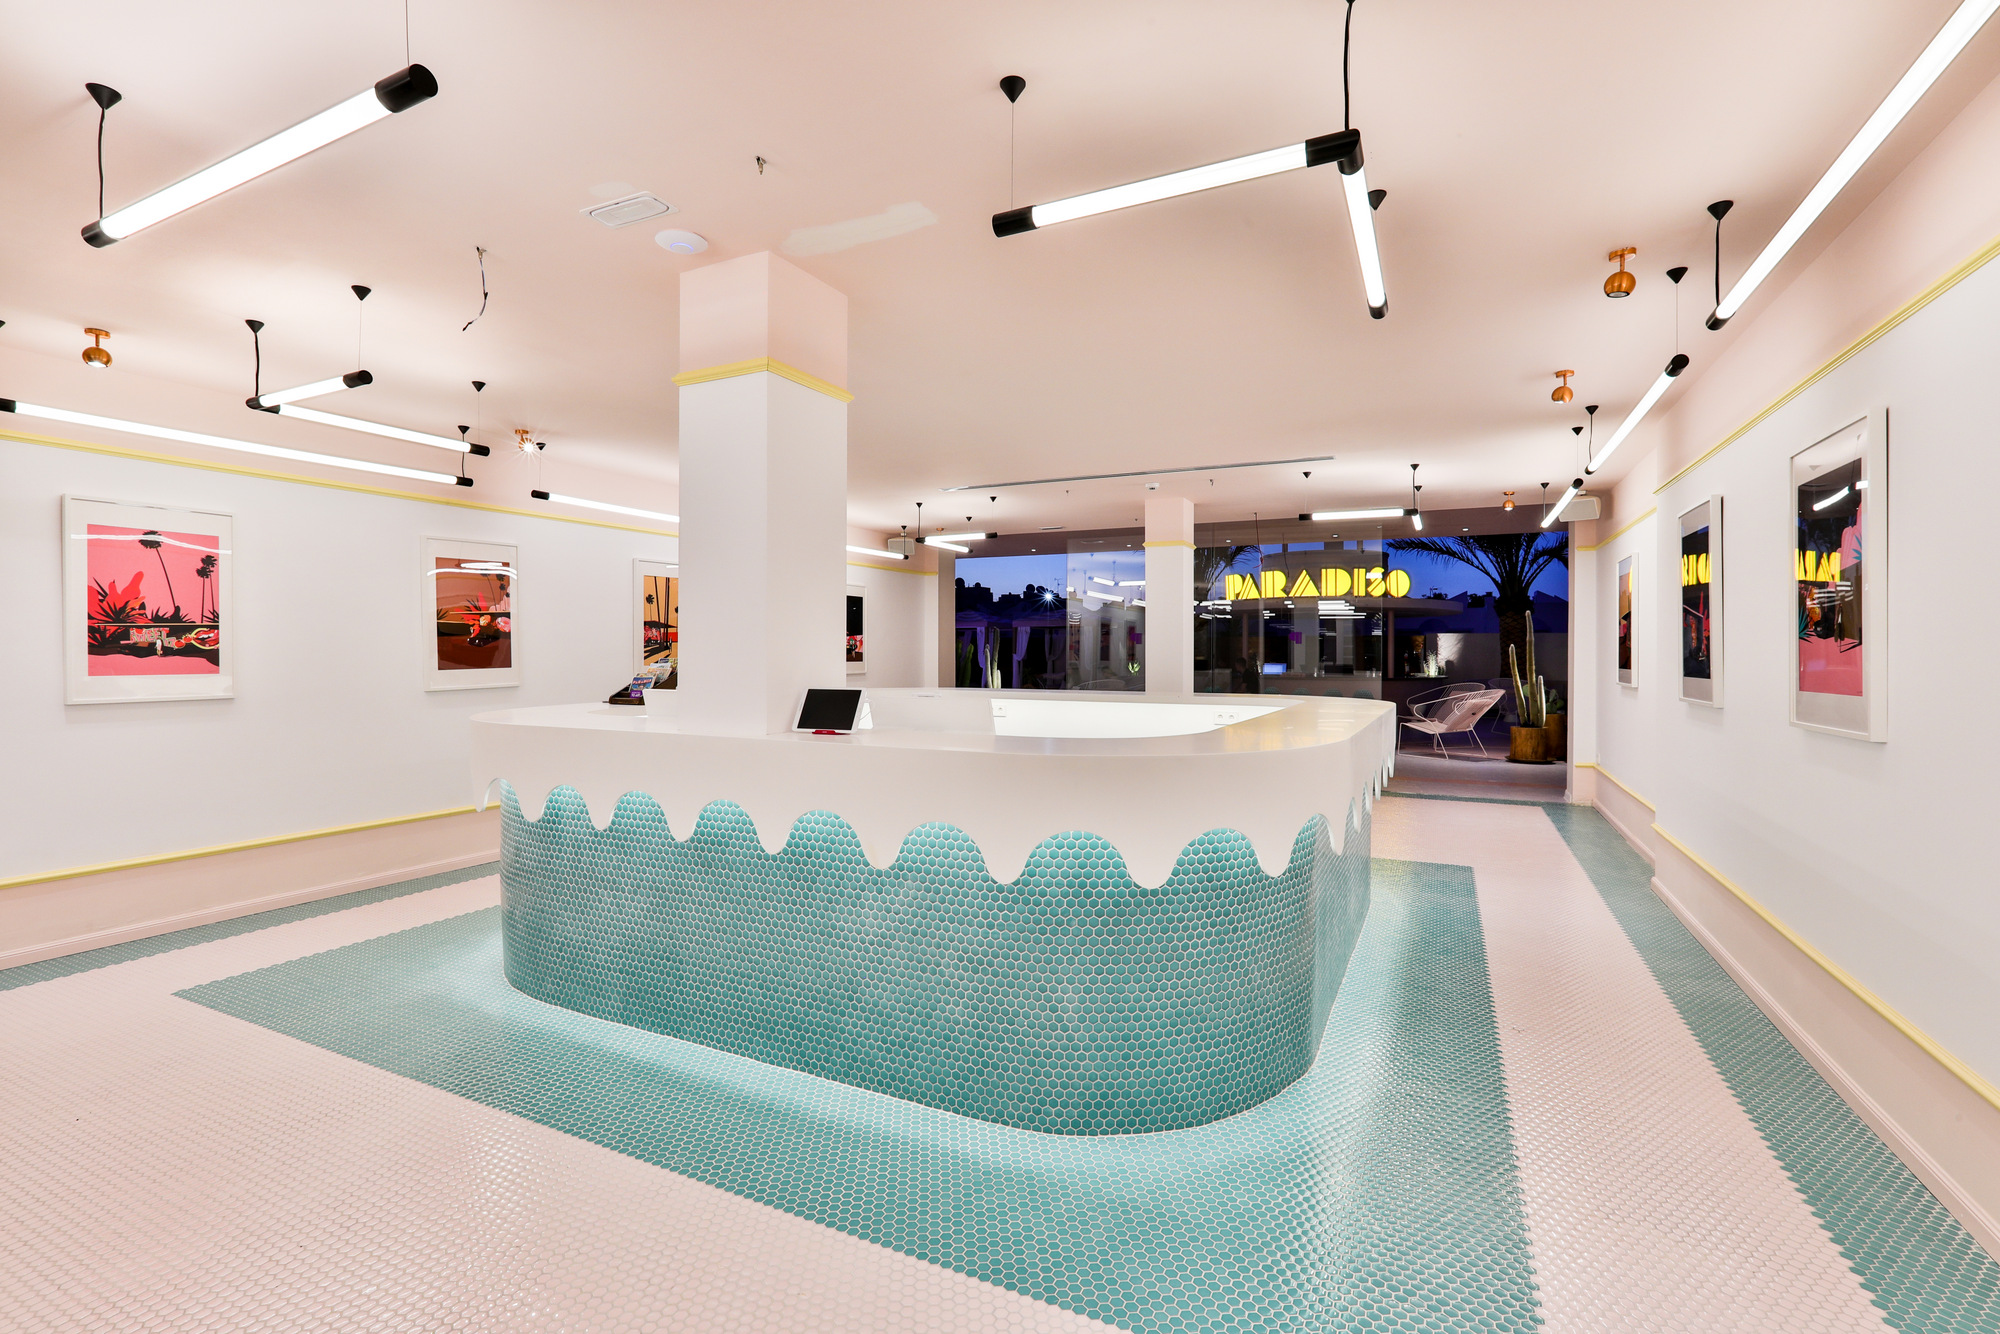 图片[7]|伊维萨Paradiso艺术酒店|ART-Arrakis | 建筑室内设计的创新与灵感